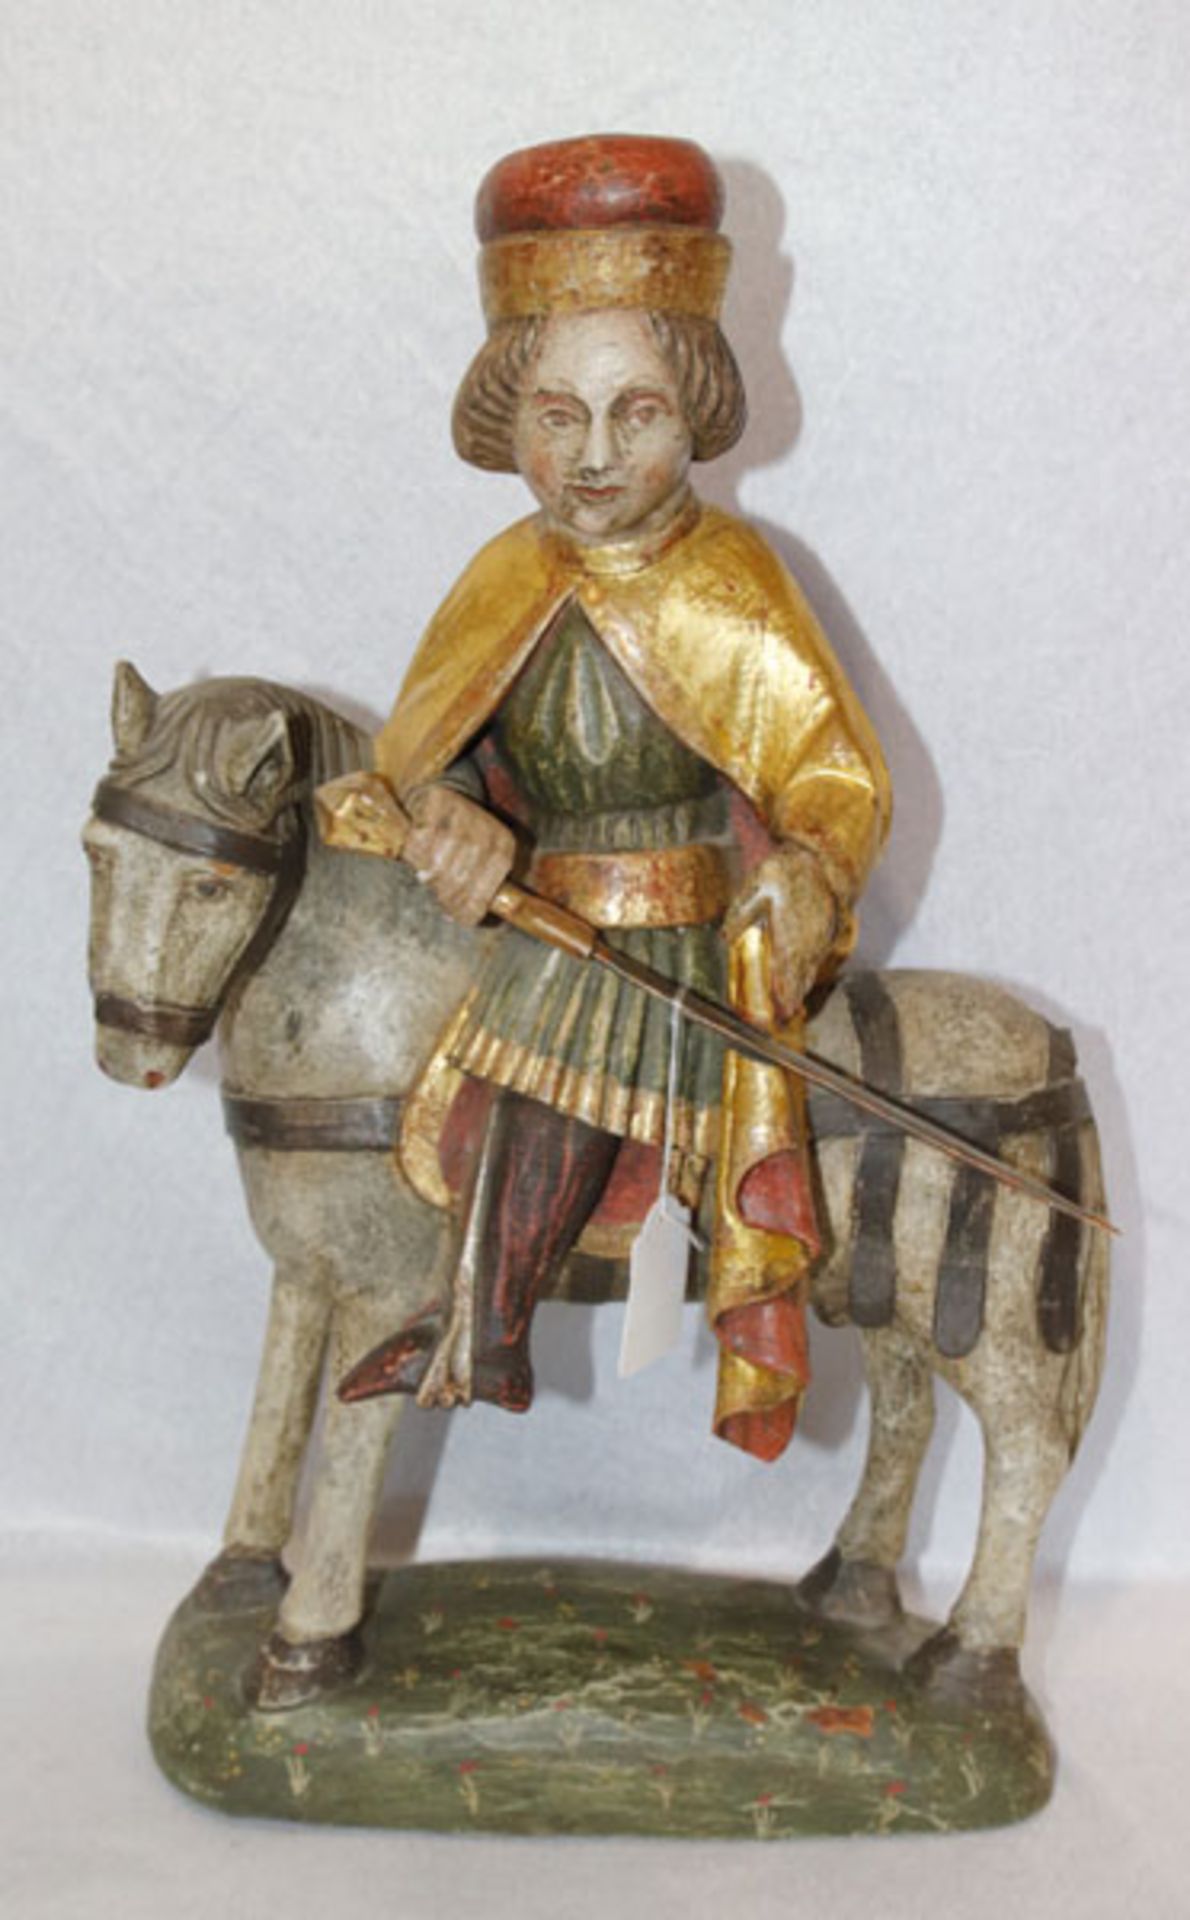 Holz Figurenskulptur 'Heiliger Martin auf Pferd', farbig gefaßt, bestossen, Fassung beschädigt, H 50